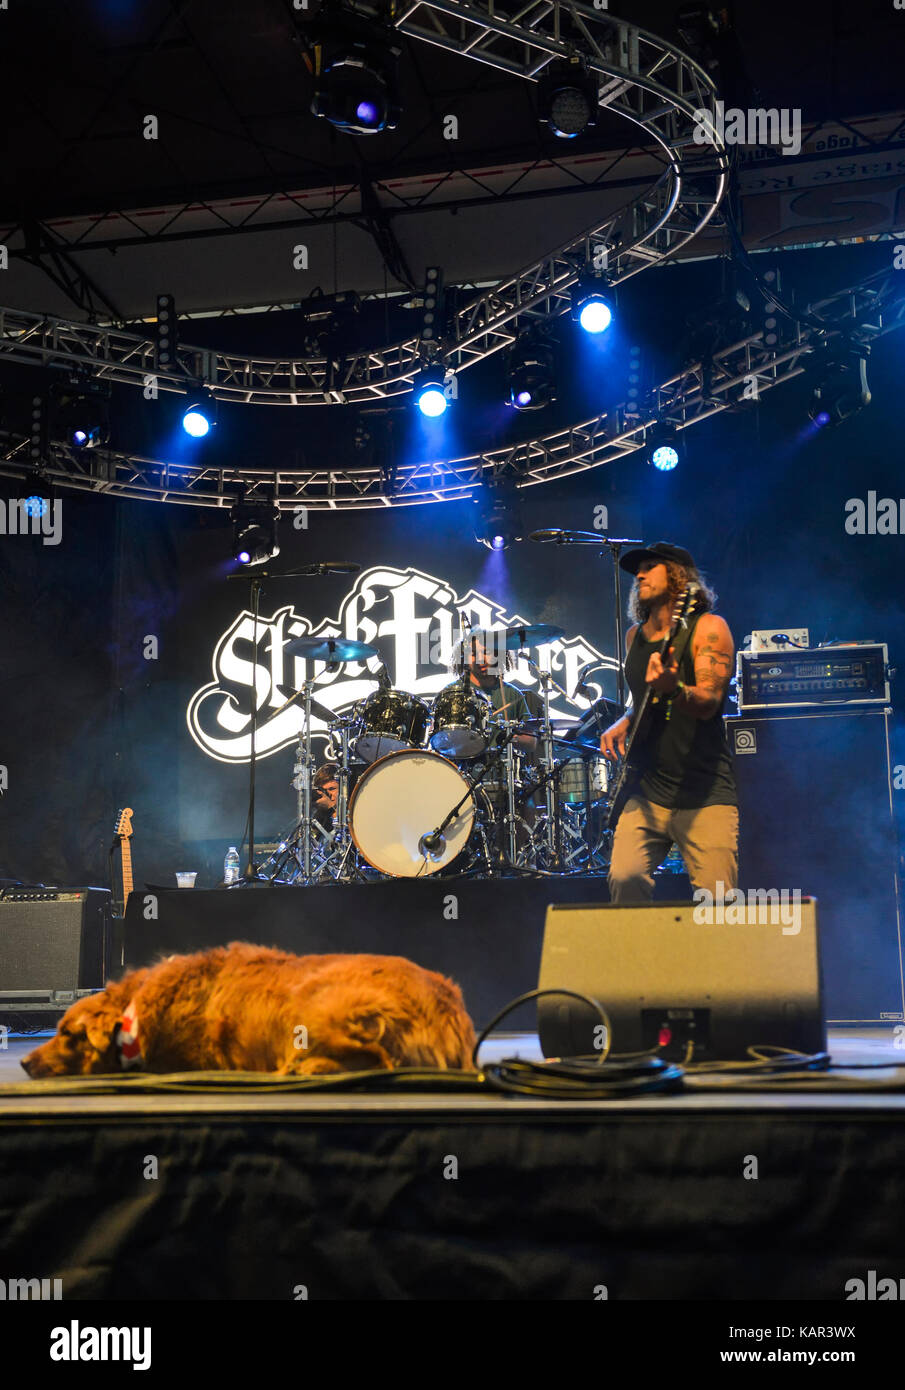 Las Vegas, Nevada - 23. September 2017 - Die band Strichmännchen mit Ihrem Hund Kakao auf der Bühne am Leben ist schön Festival Tag 2 Stockfoto